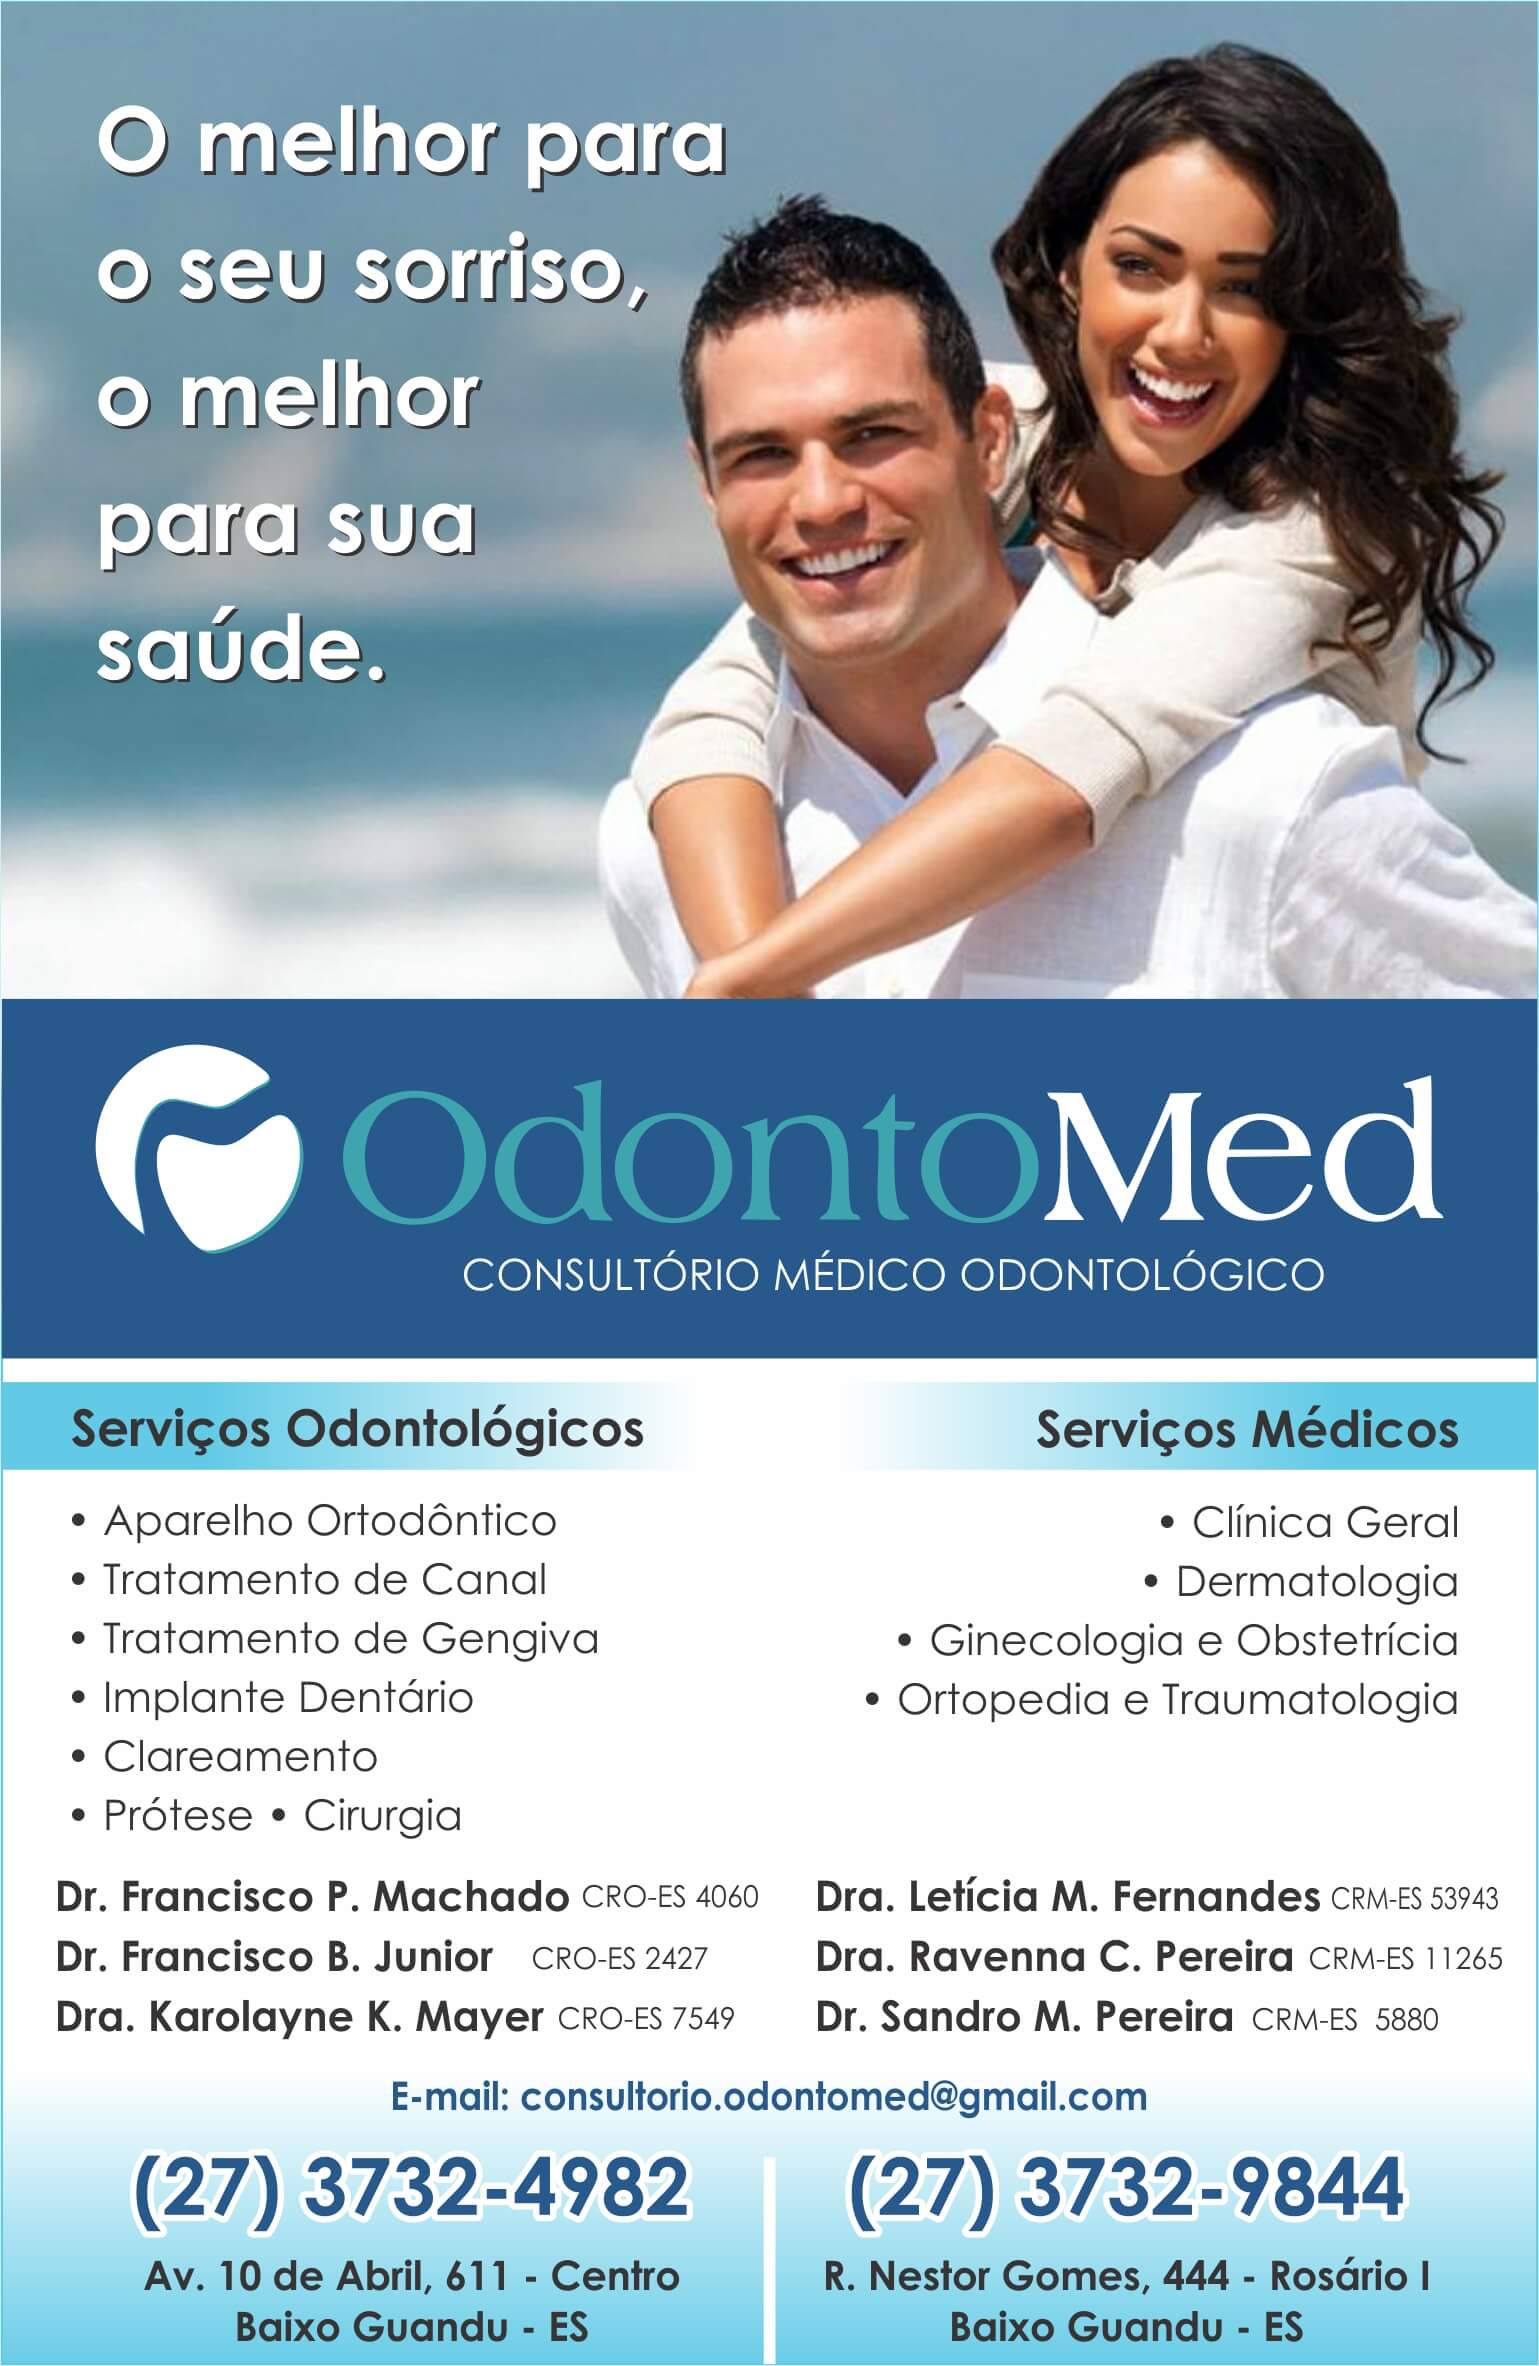 Ortopedista Dr. Sandro M. Pereira